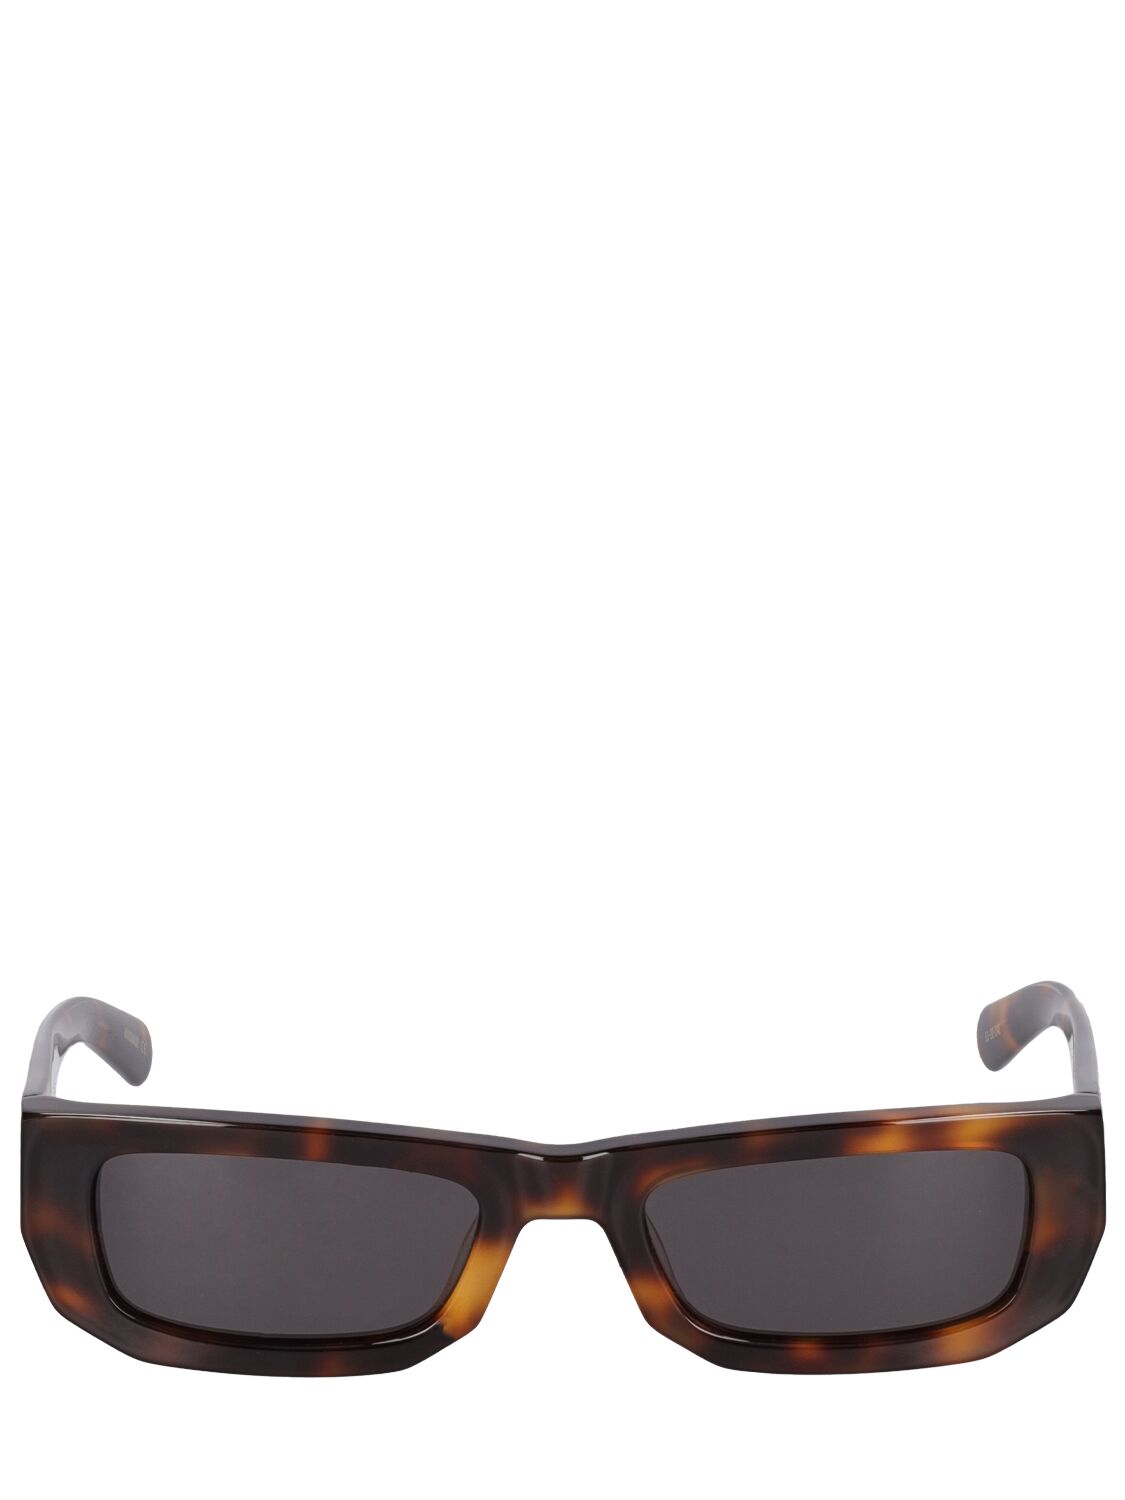 Flatlist Eyewear Bricktop Sunglasses In Brown